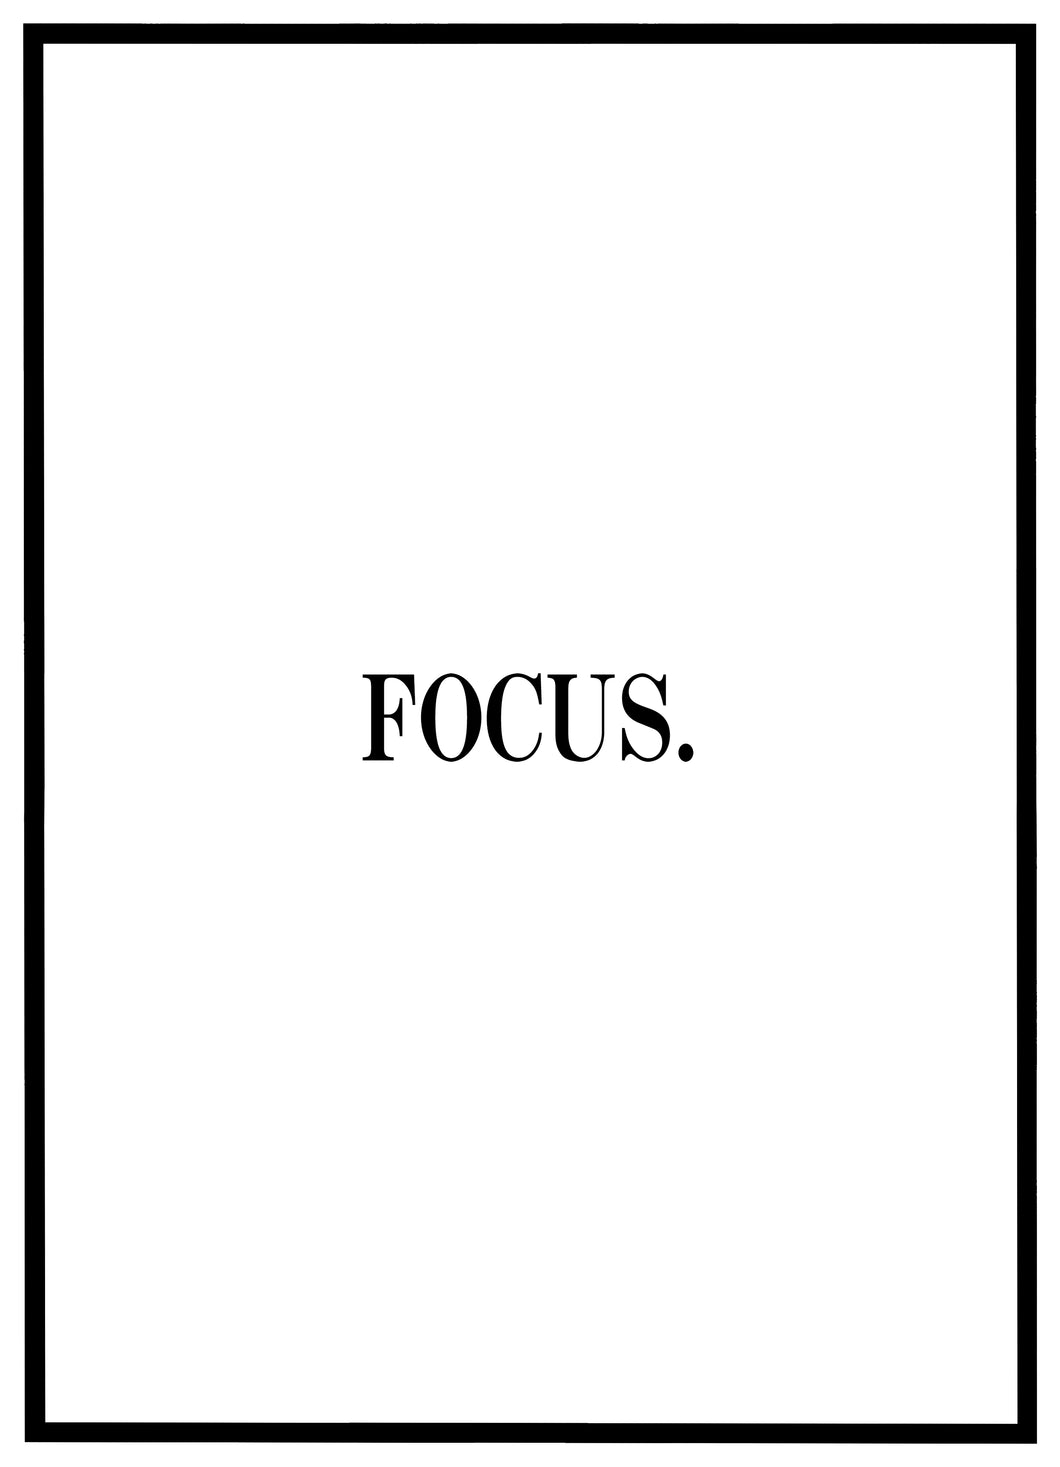 Focus - Plakat